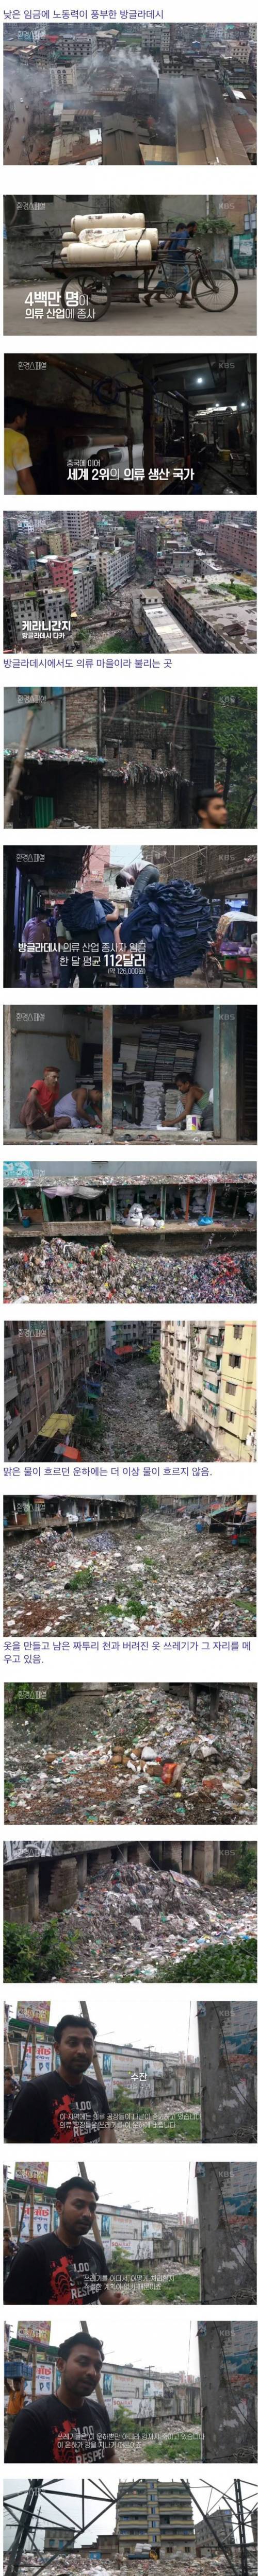 3 의류 공장으로 더렵혀진 방글라데시의 땅.jpg